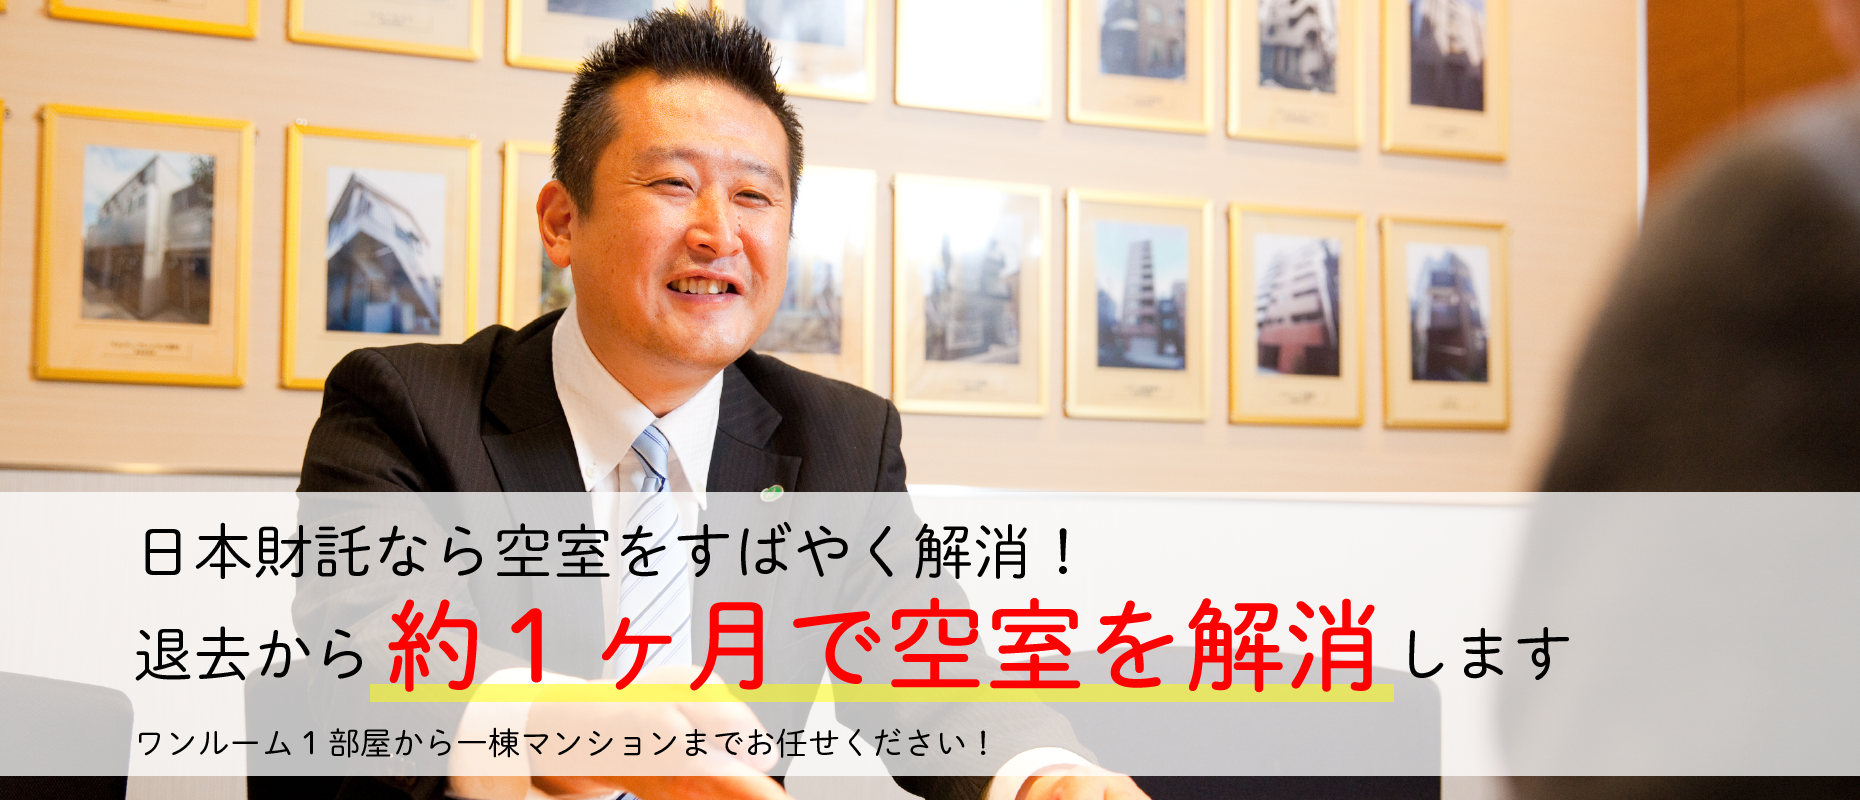 賃貸管理の日本財託 マンション アパートの賃貸オーナーサポート 日本財託管理サービス